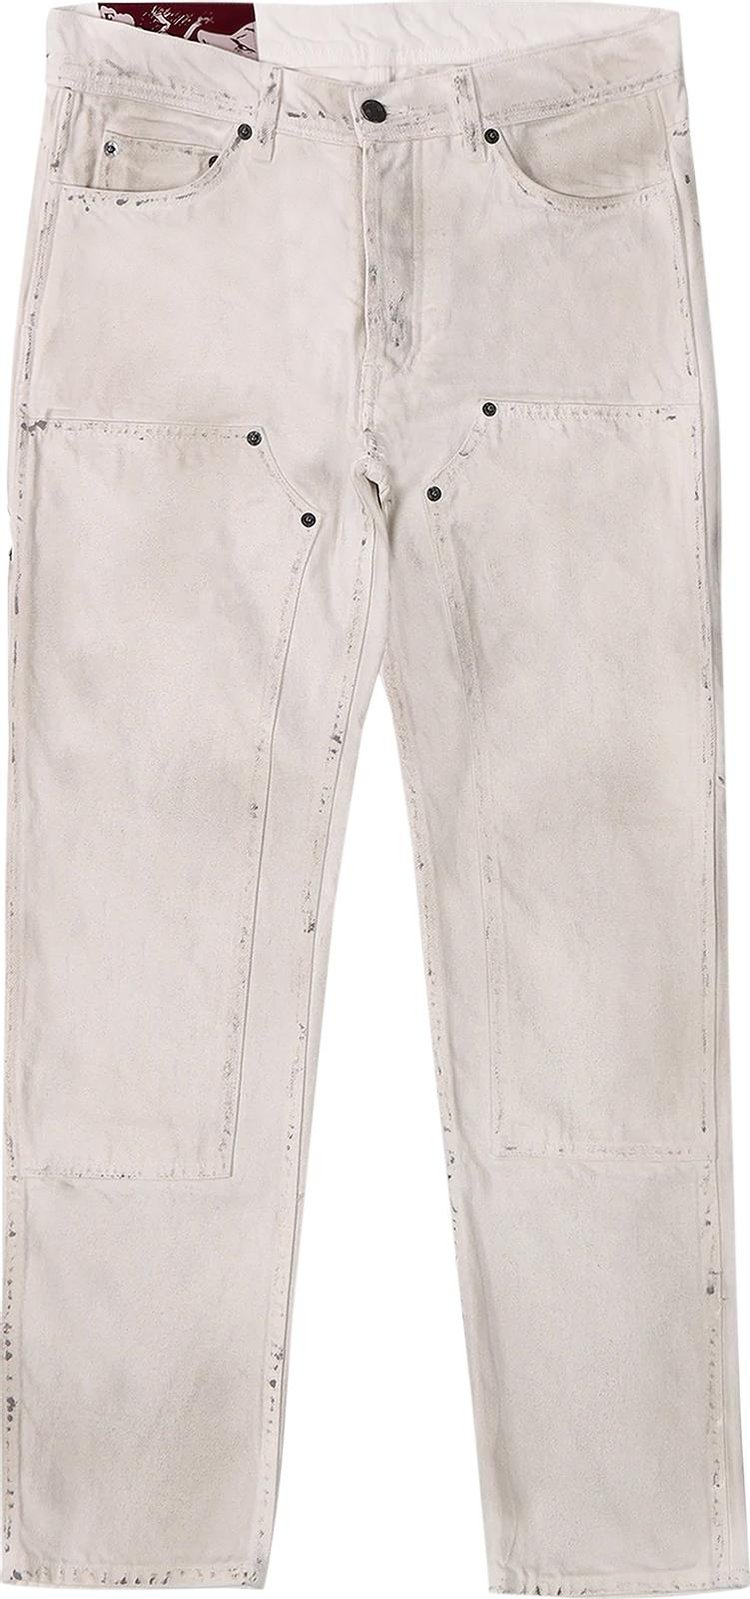 Enfants Riches Déprimés Carpenter Jeans 'Dirty White'